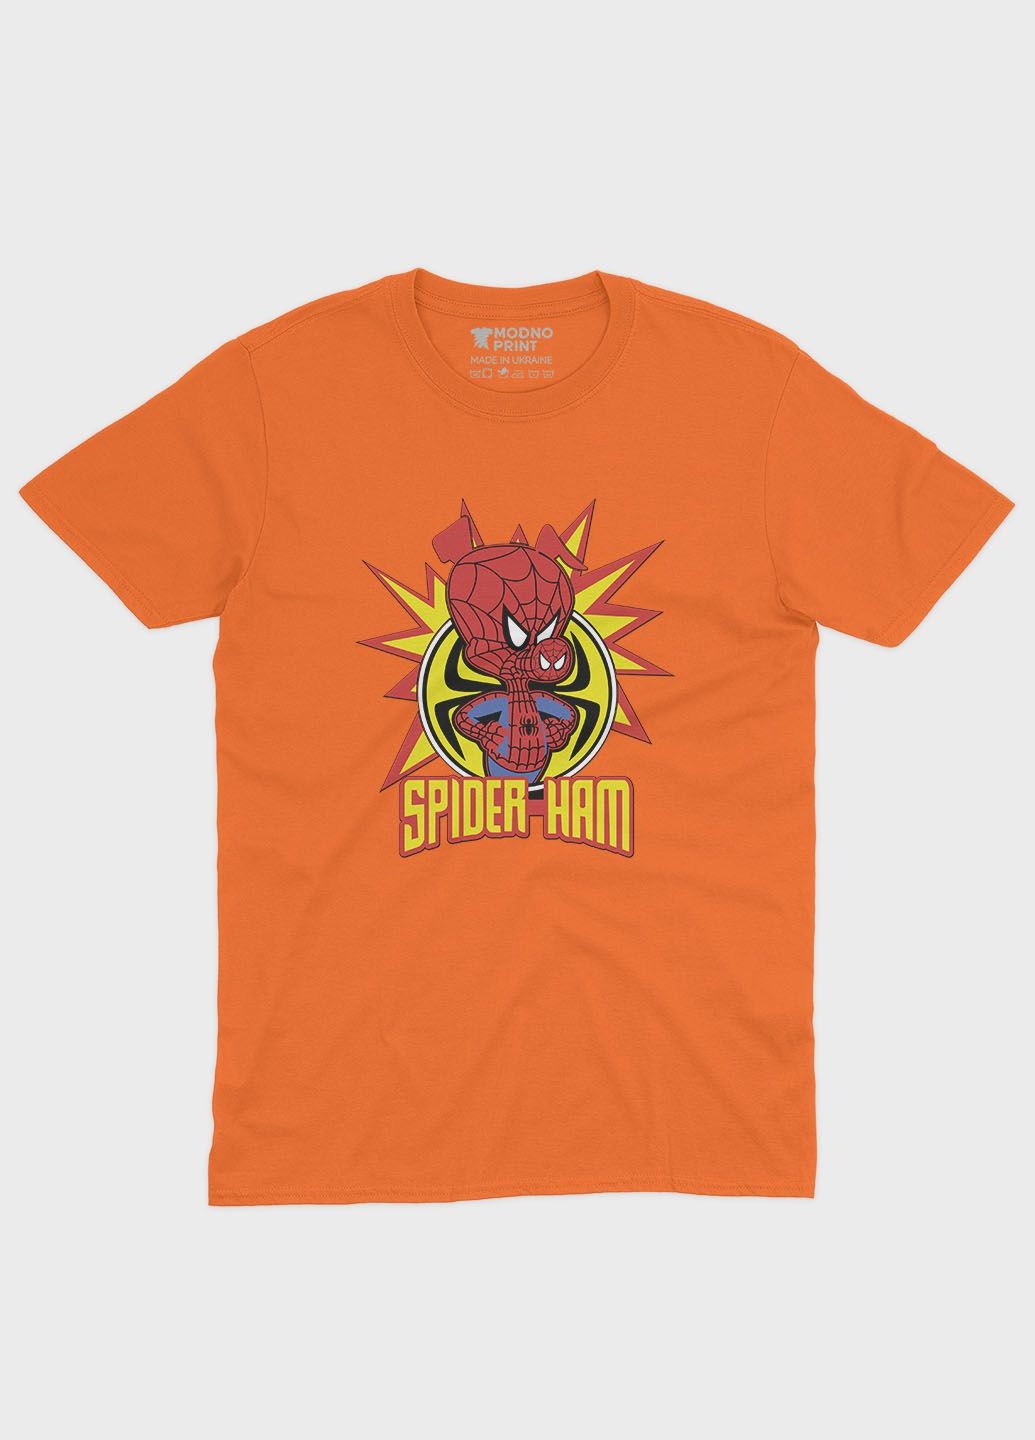 Оранжевая демисезонная футболка для девочки с принтом супергероя - человек-паук (ts001-1-ora-006-014-035-g) Modno